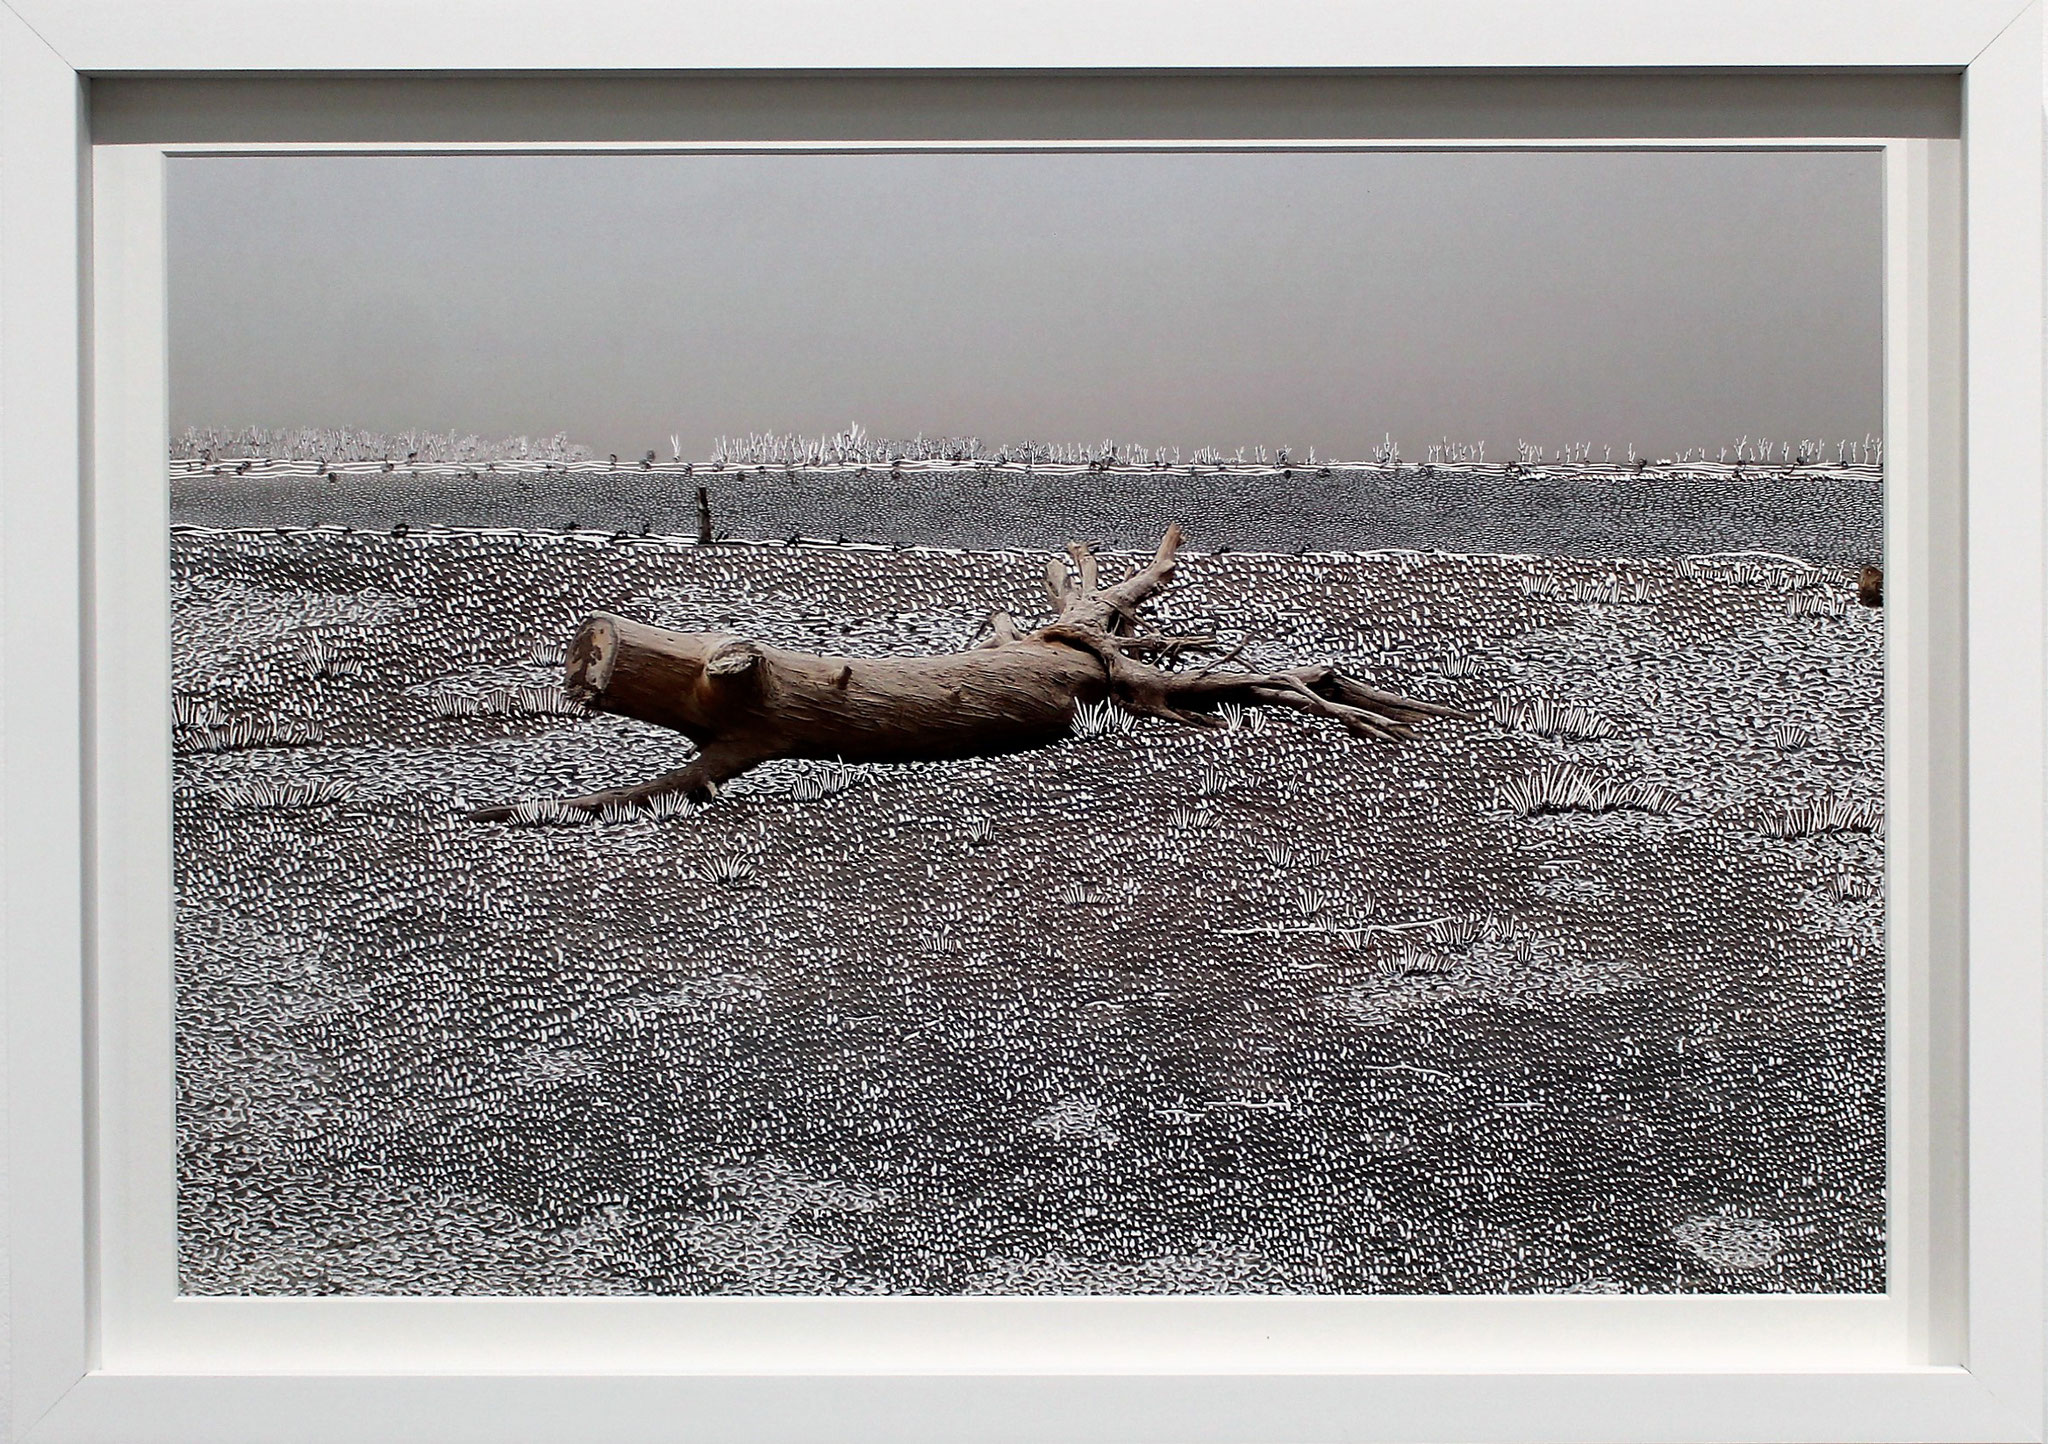 Quand les eaux se retirent, Raphaëlle Peria, 30 x 45cm, 2020